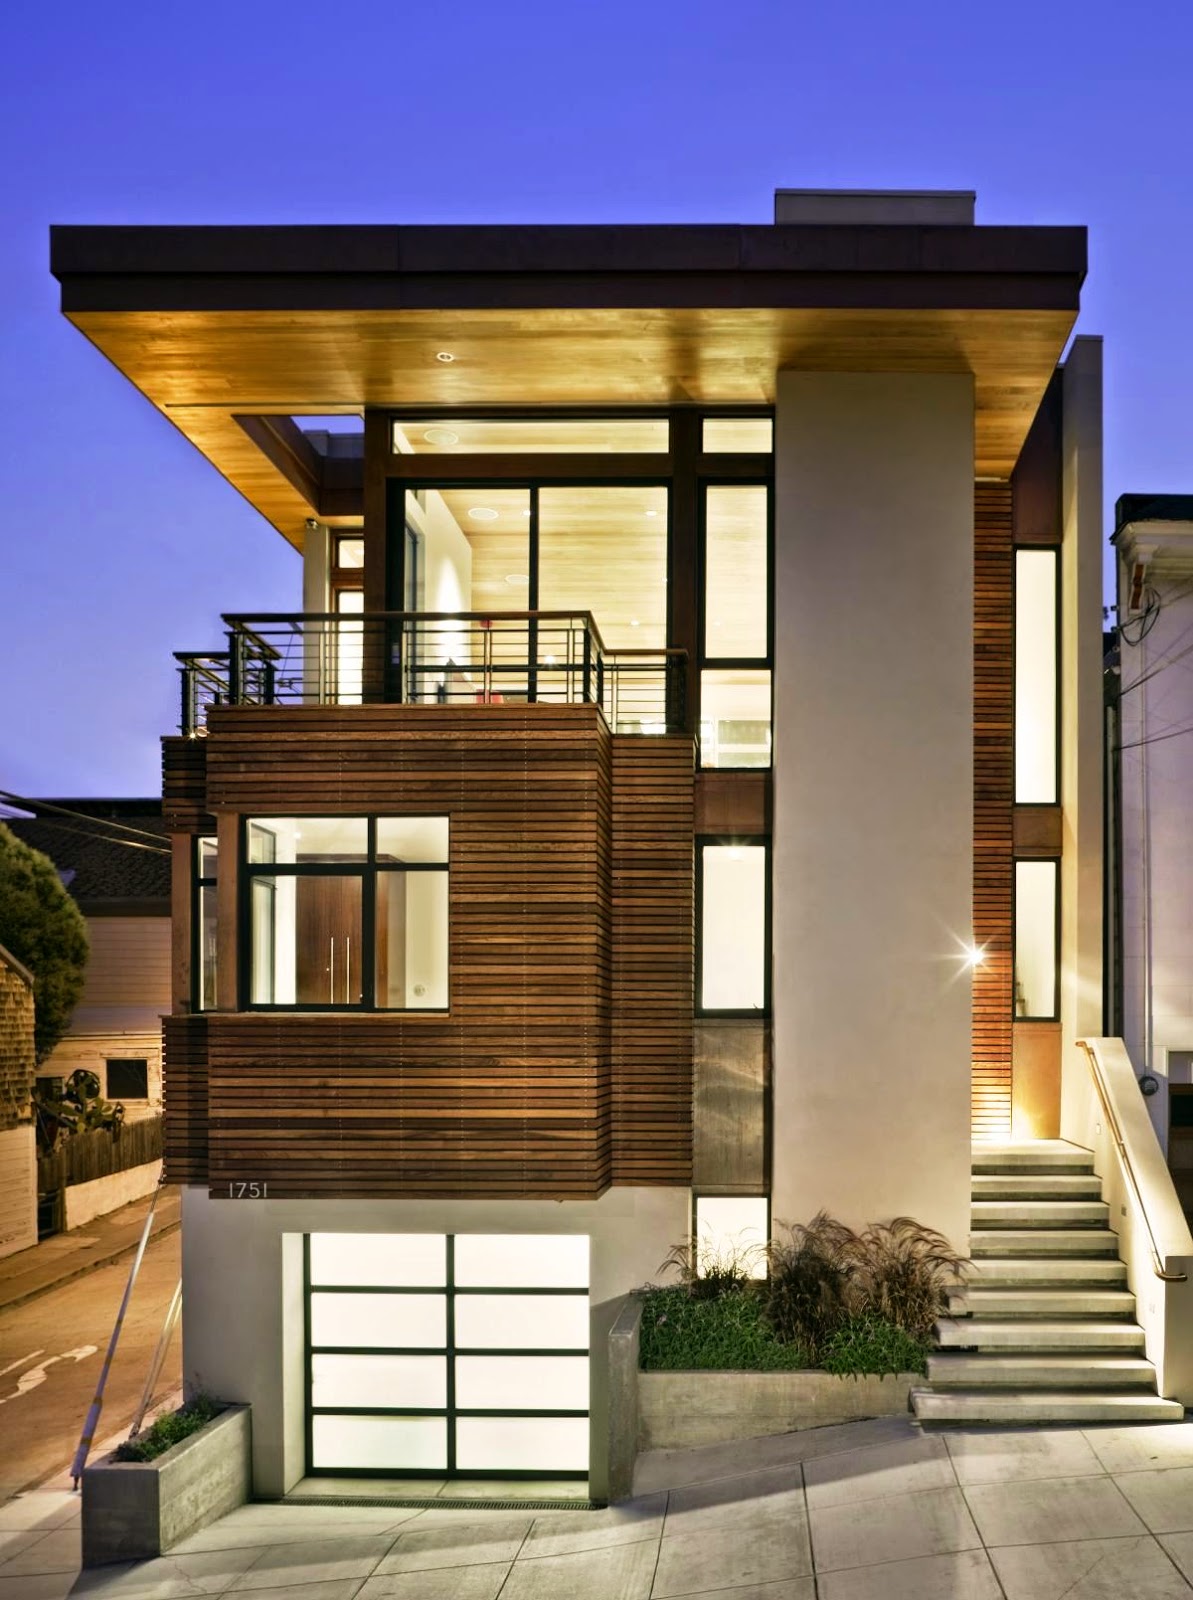 Desain Rumah Minimalis Modern 2 Lantai Lengkap Dshdesign4kinfo